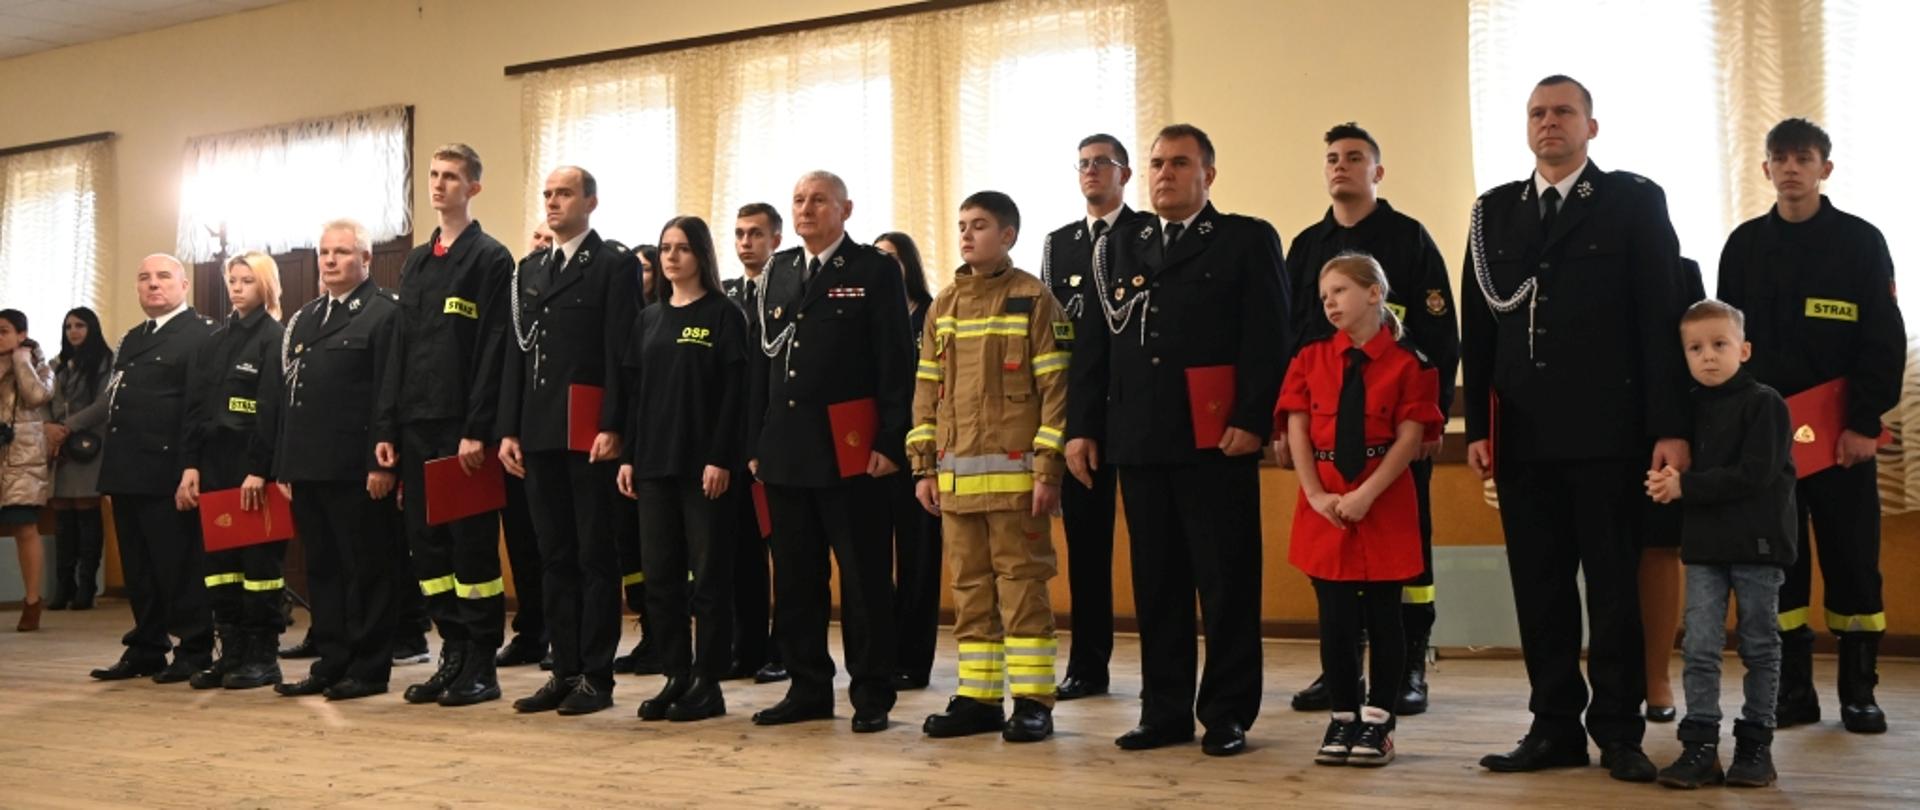 Uroczyste wręczenie promes dla Młodzieżowych Drużyn Pożarniczych z terenu powiatu sochaczewskiego